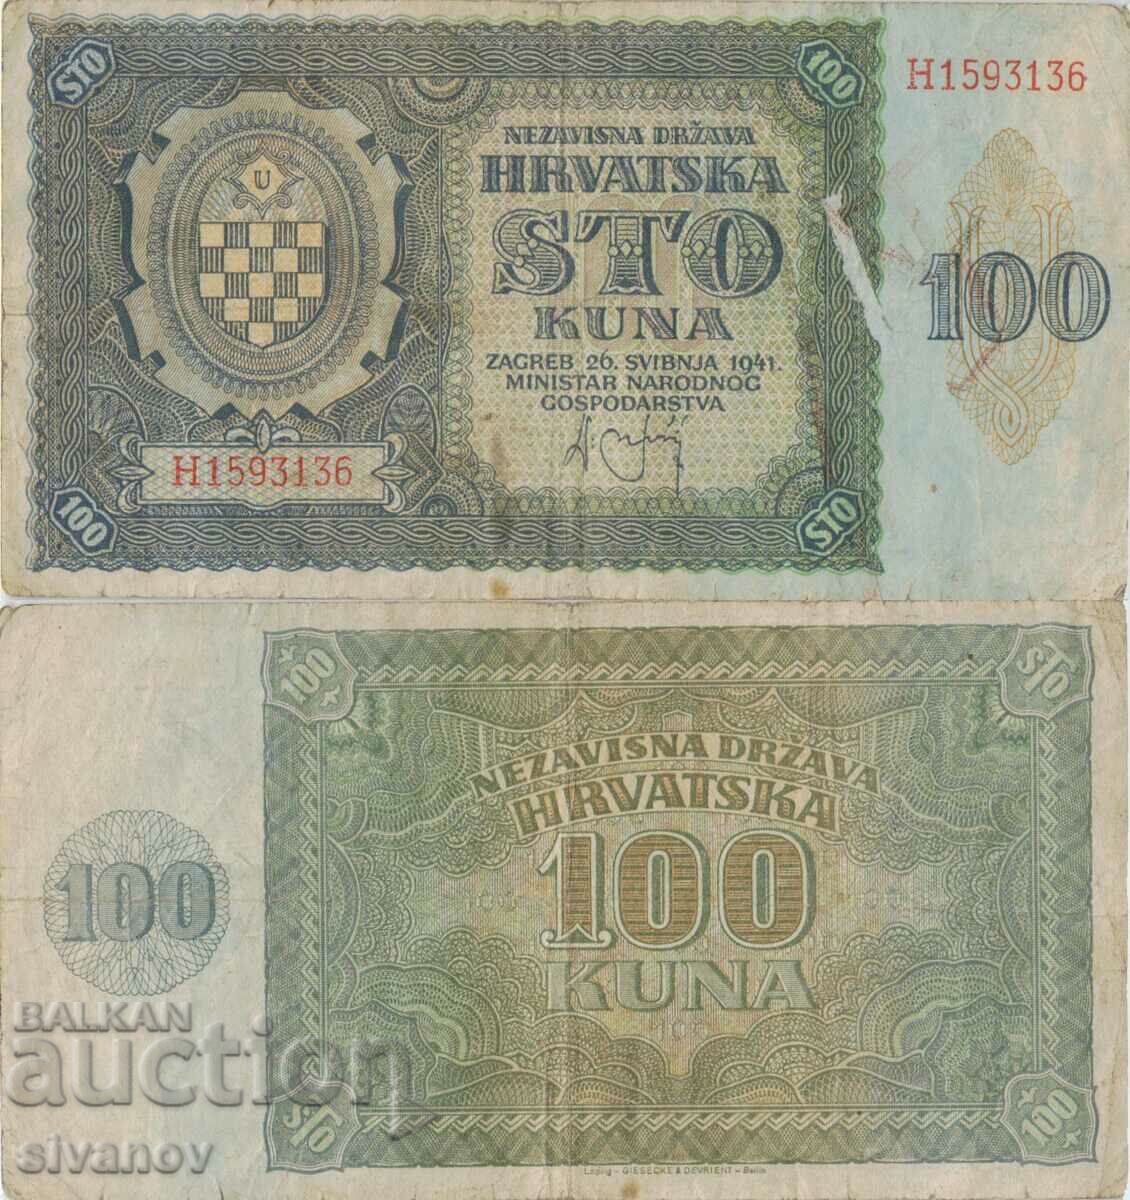 Croatia 100 kuna 1941 banknote #5320